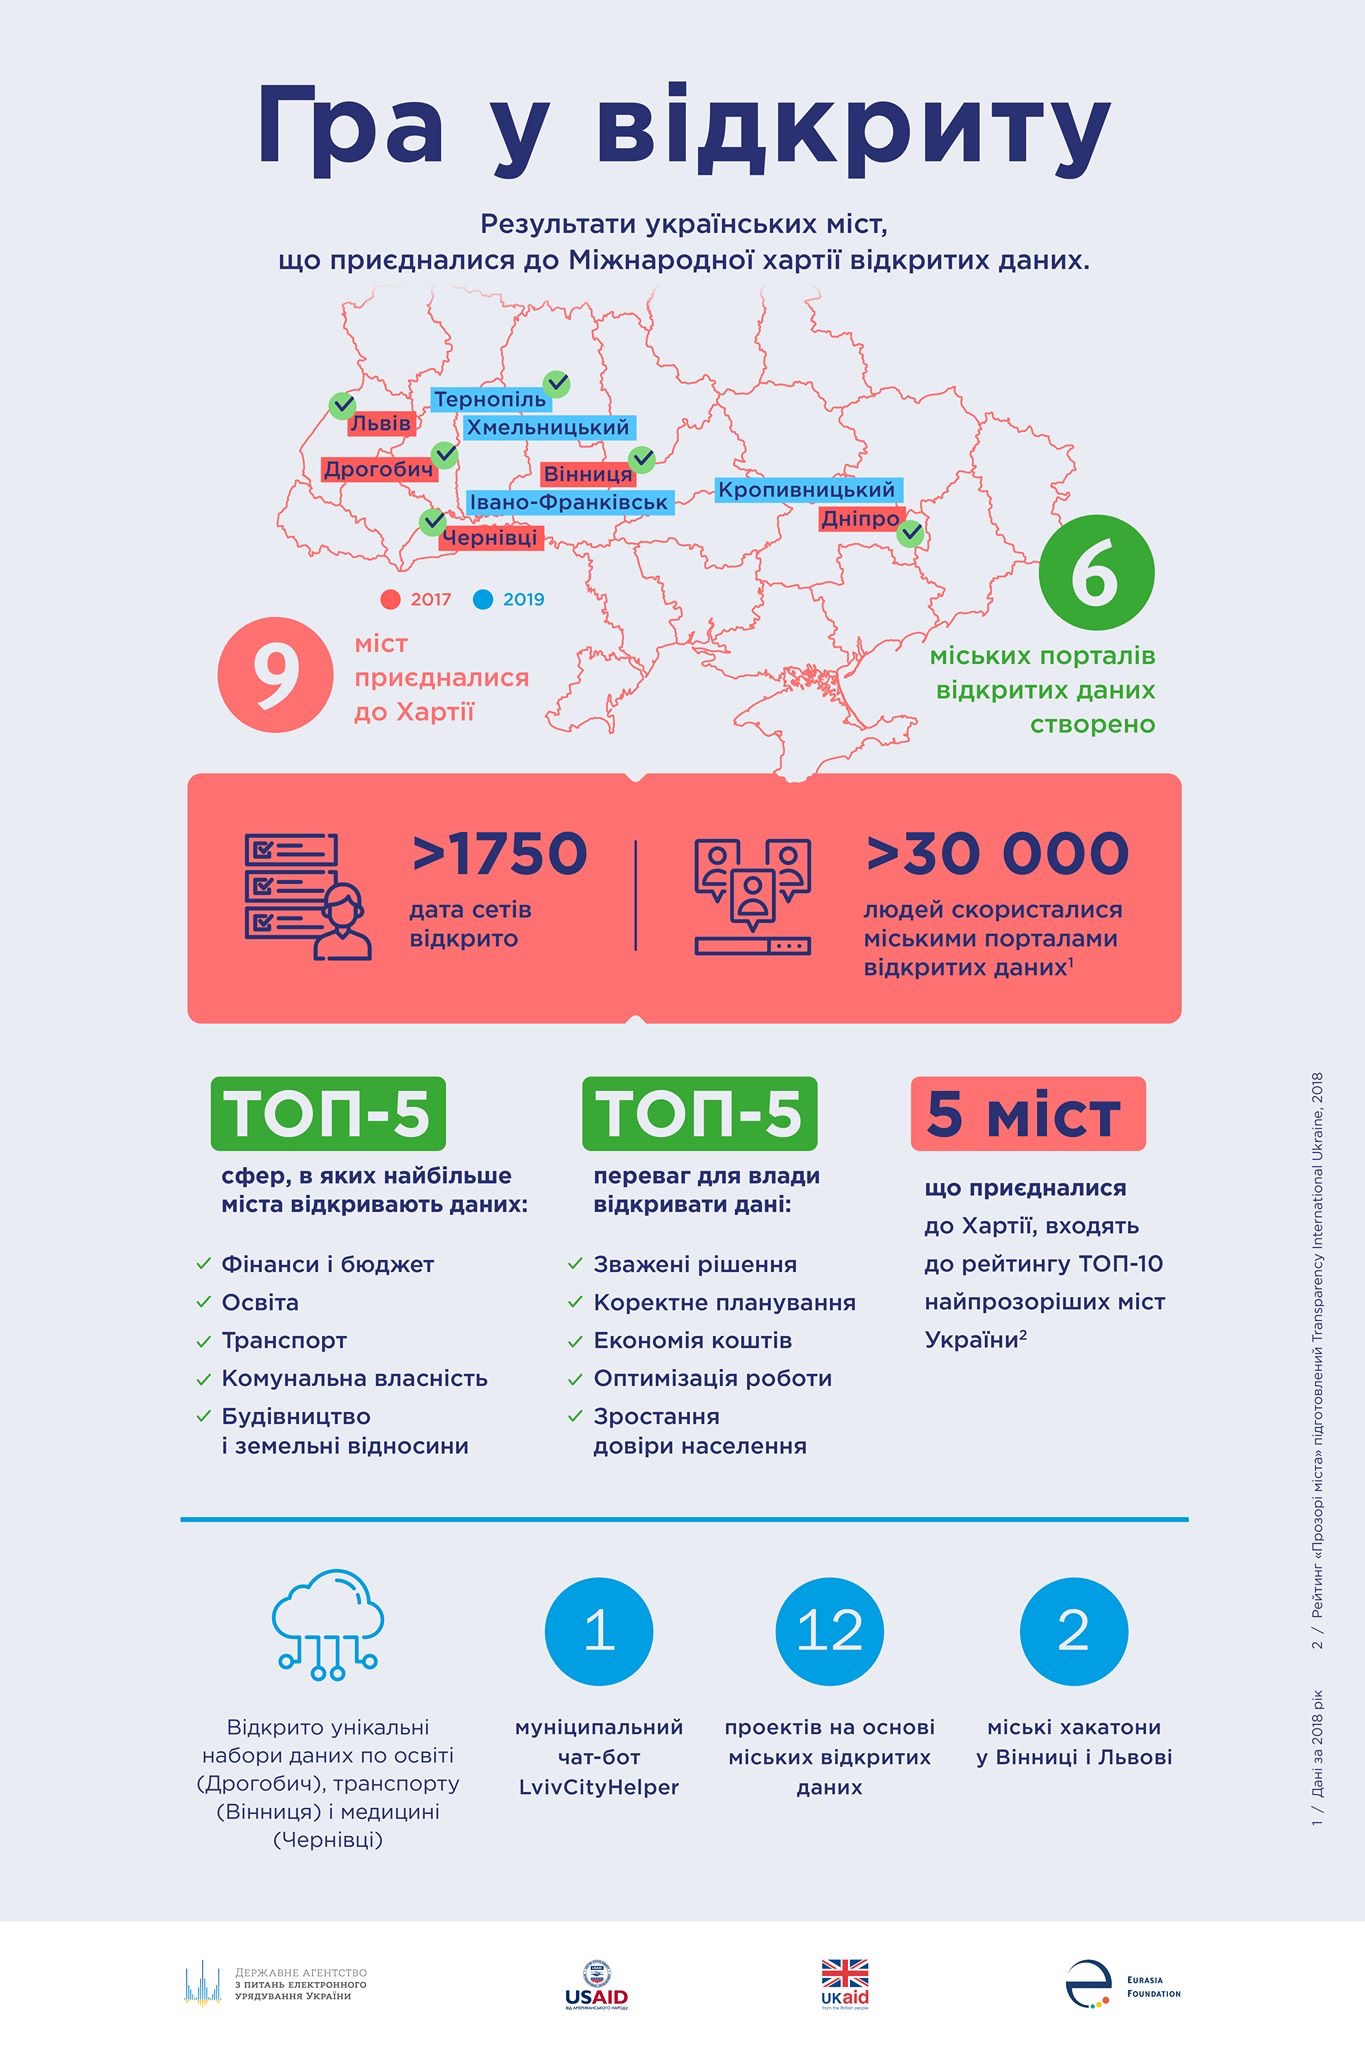 Чотири українських міста приєдналися до Міжнародної хартії відкритих даних 